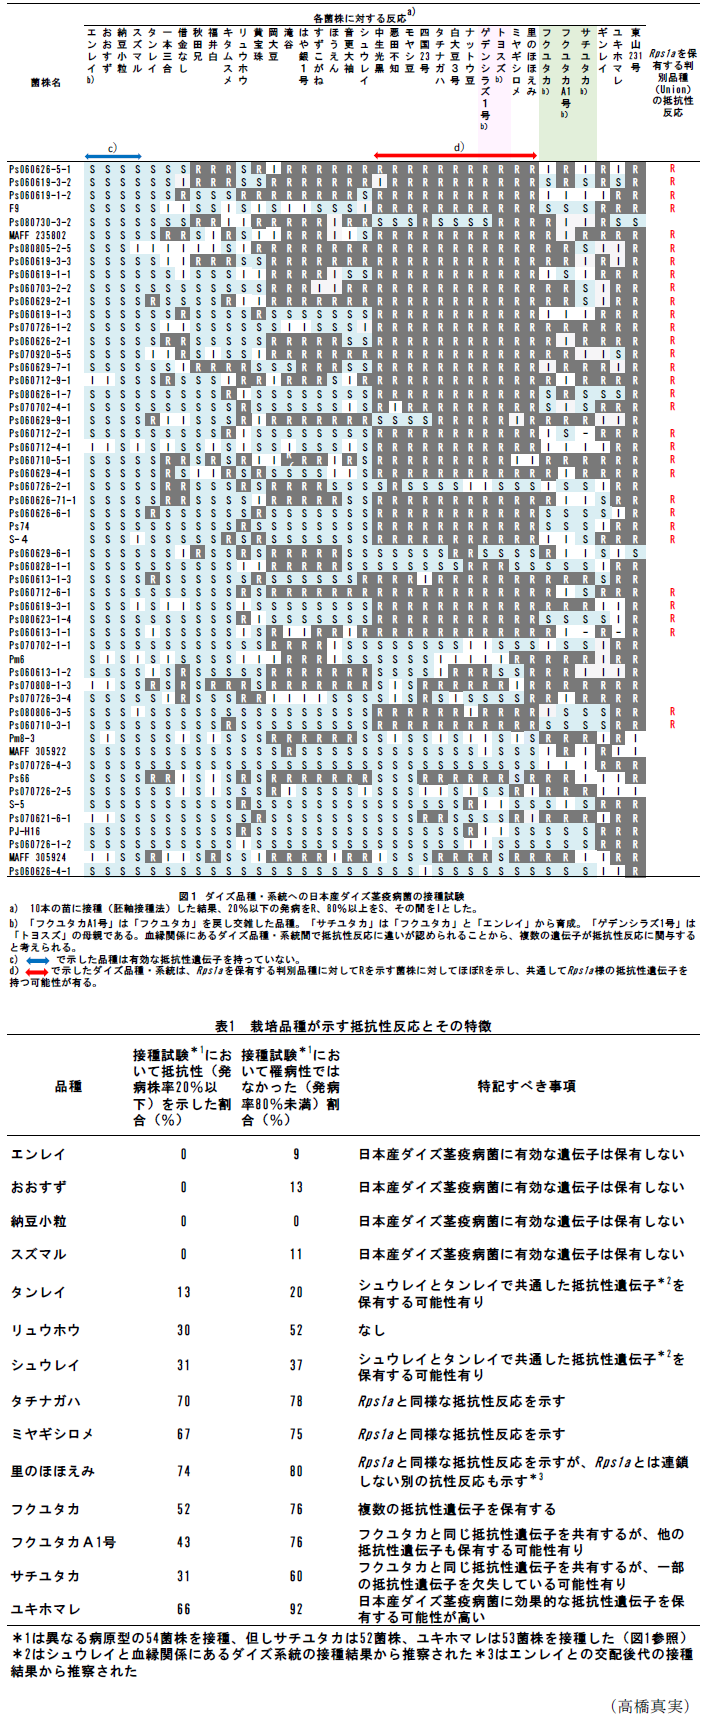 図1 ダイズ品種・系統への日本産ダイズ茎疫病菌の接種試験,表1 栽培品種が示す抵抗性反応とその特徴